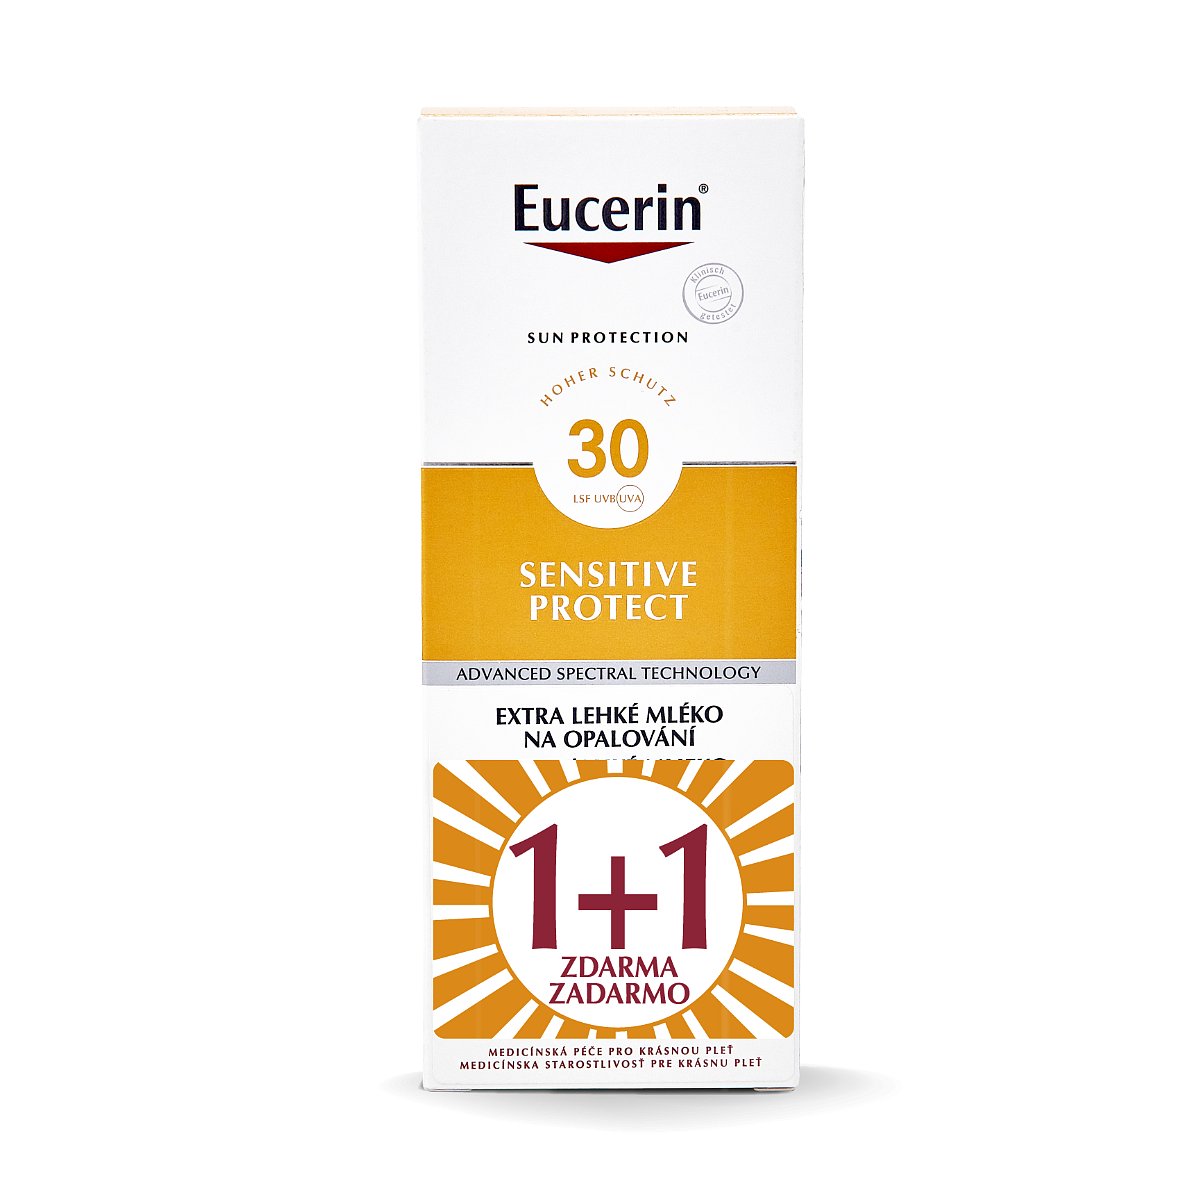 Eucerin Sensitive Protect SPF30 extra lehké mléko na opalování 2x150 ml duopack 1+1